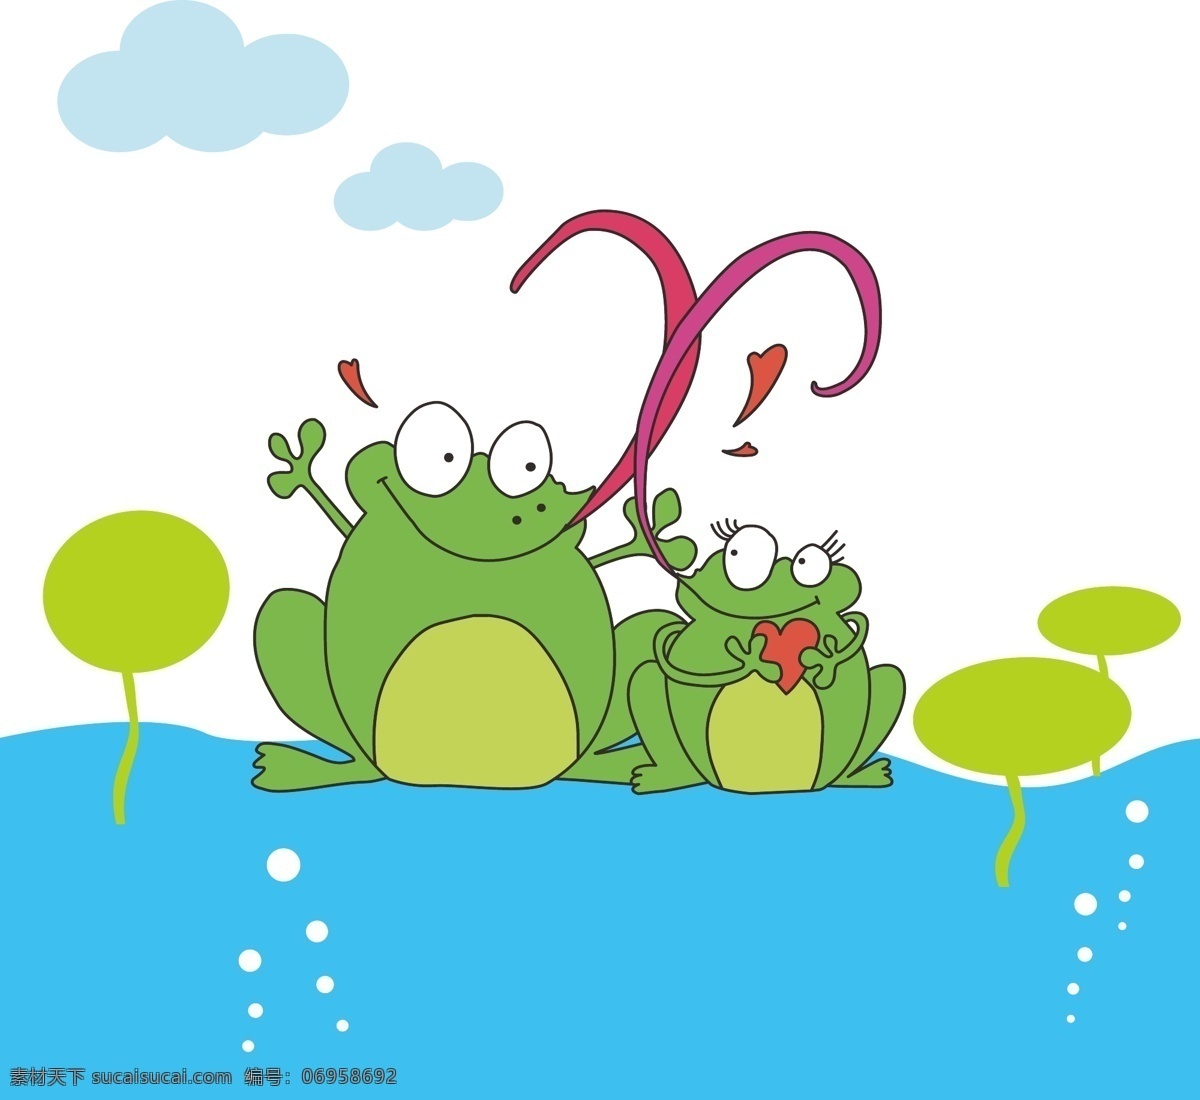 两只青蛙 儿童画 原创 矢量 可爱 卡通 动物 青蛙 荷叶 荷塘 原创卡通素材 生物世界 野生动物